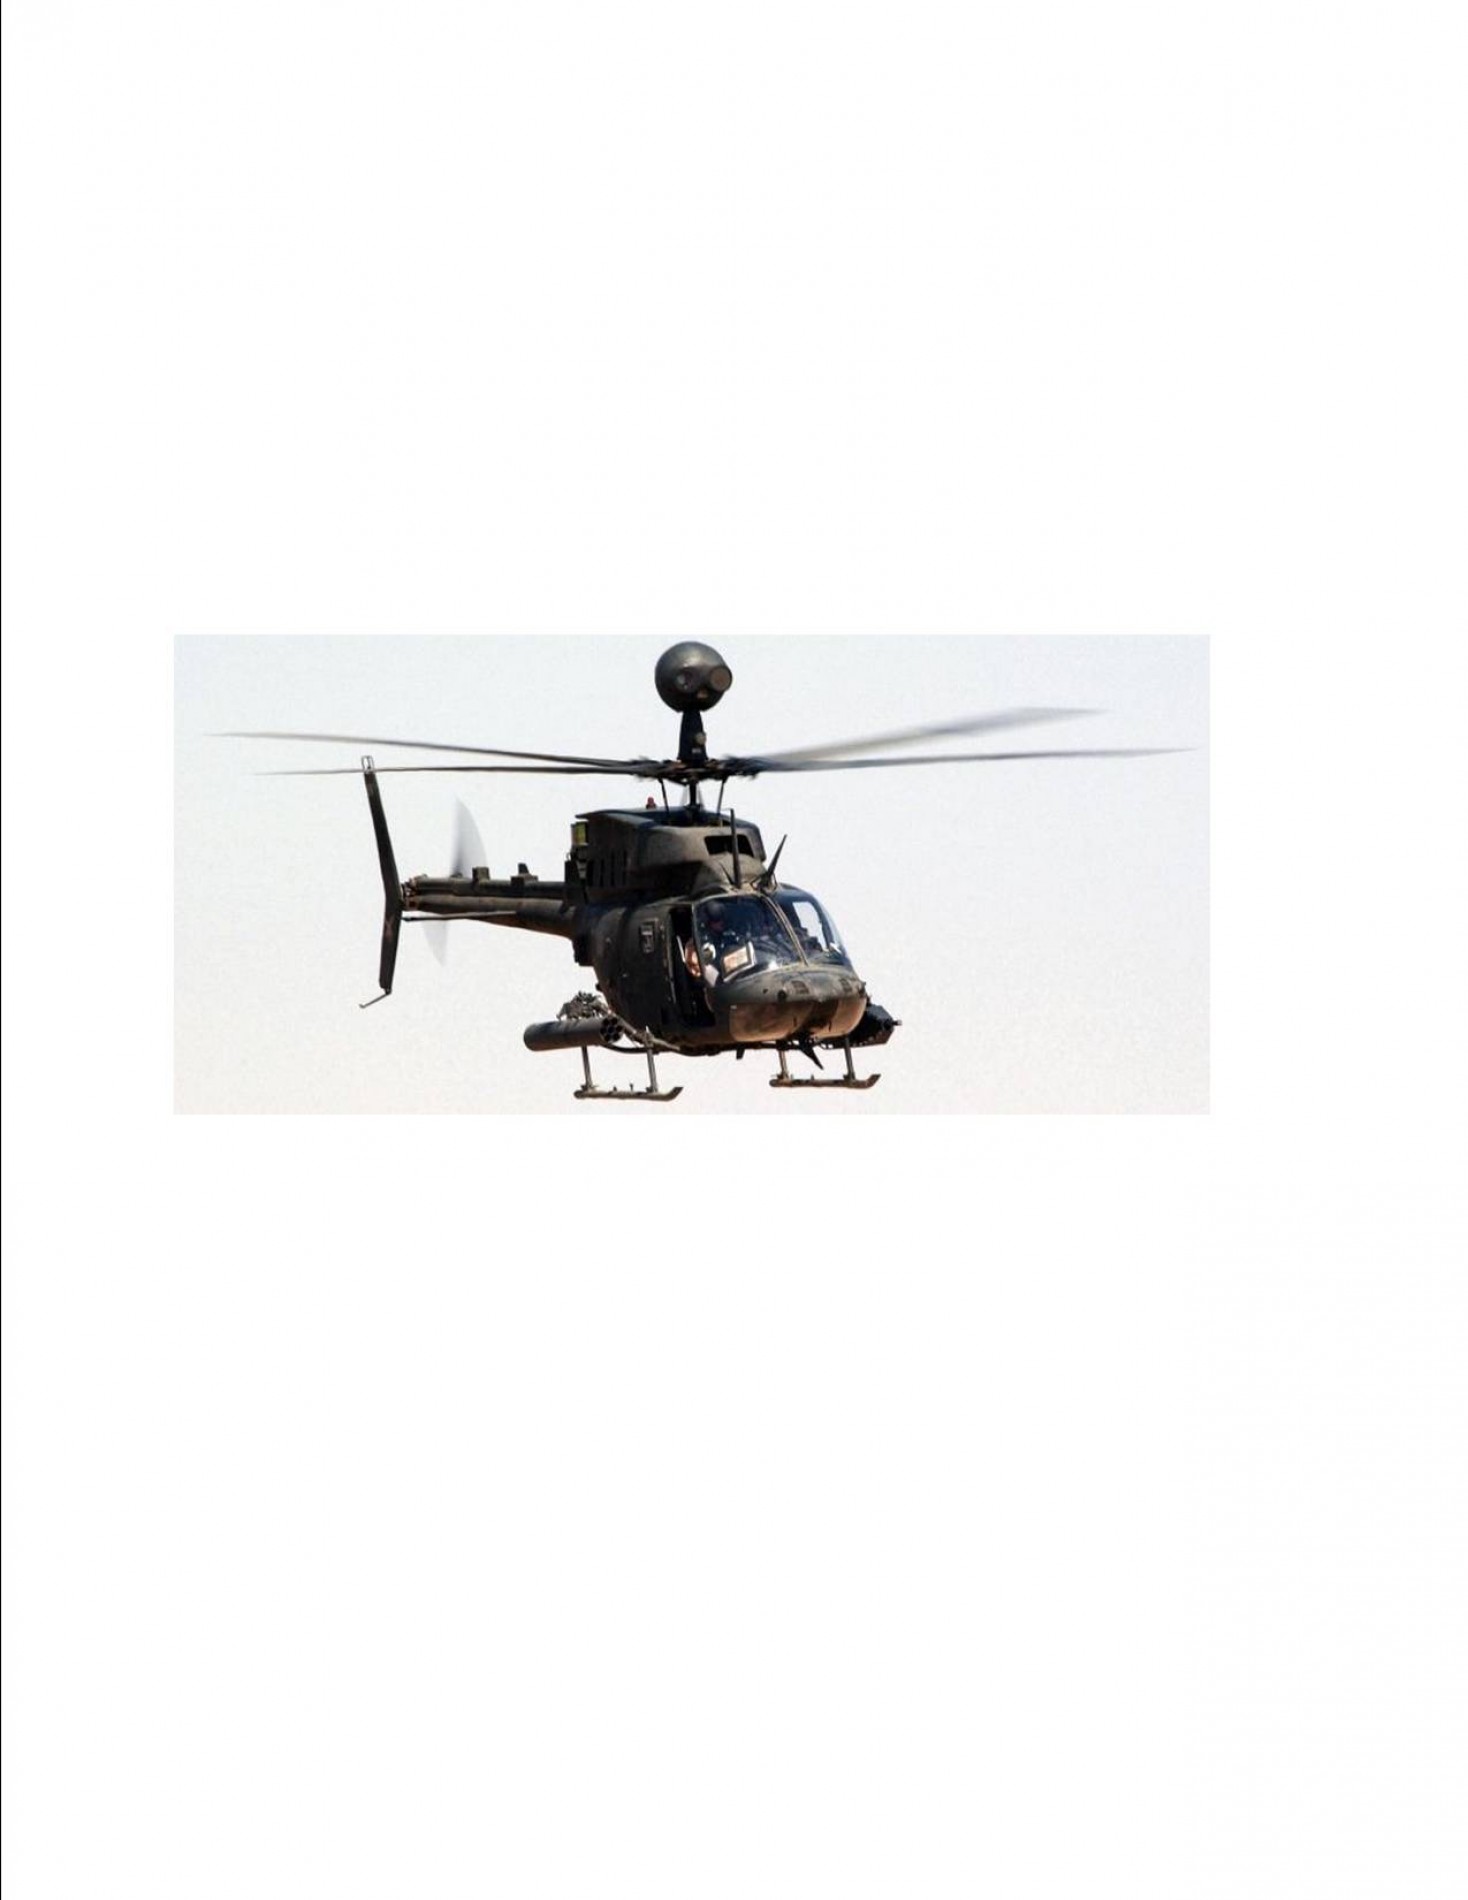 New OH-58D Warrior Delivered | The JetAv Blog by Jack Schweibold